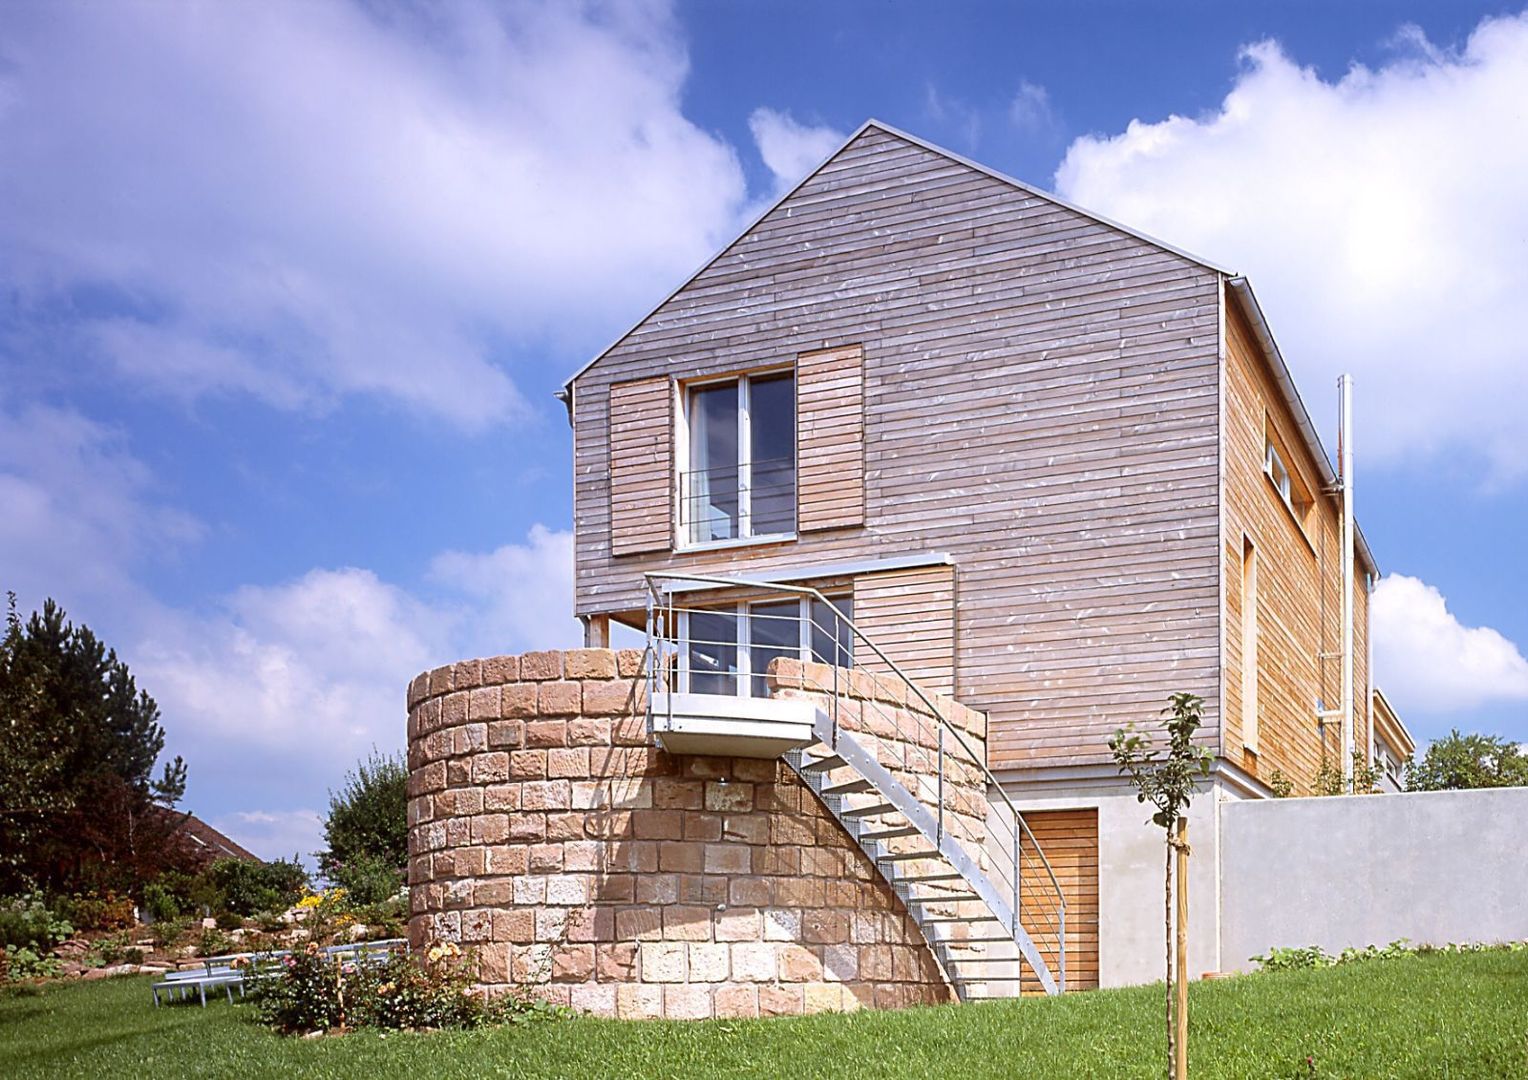 Einfamilien Wohnhaus in Holzständerkonstruktion, Jarcke Architekten Jarcke Architekten Modern houses